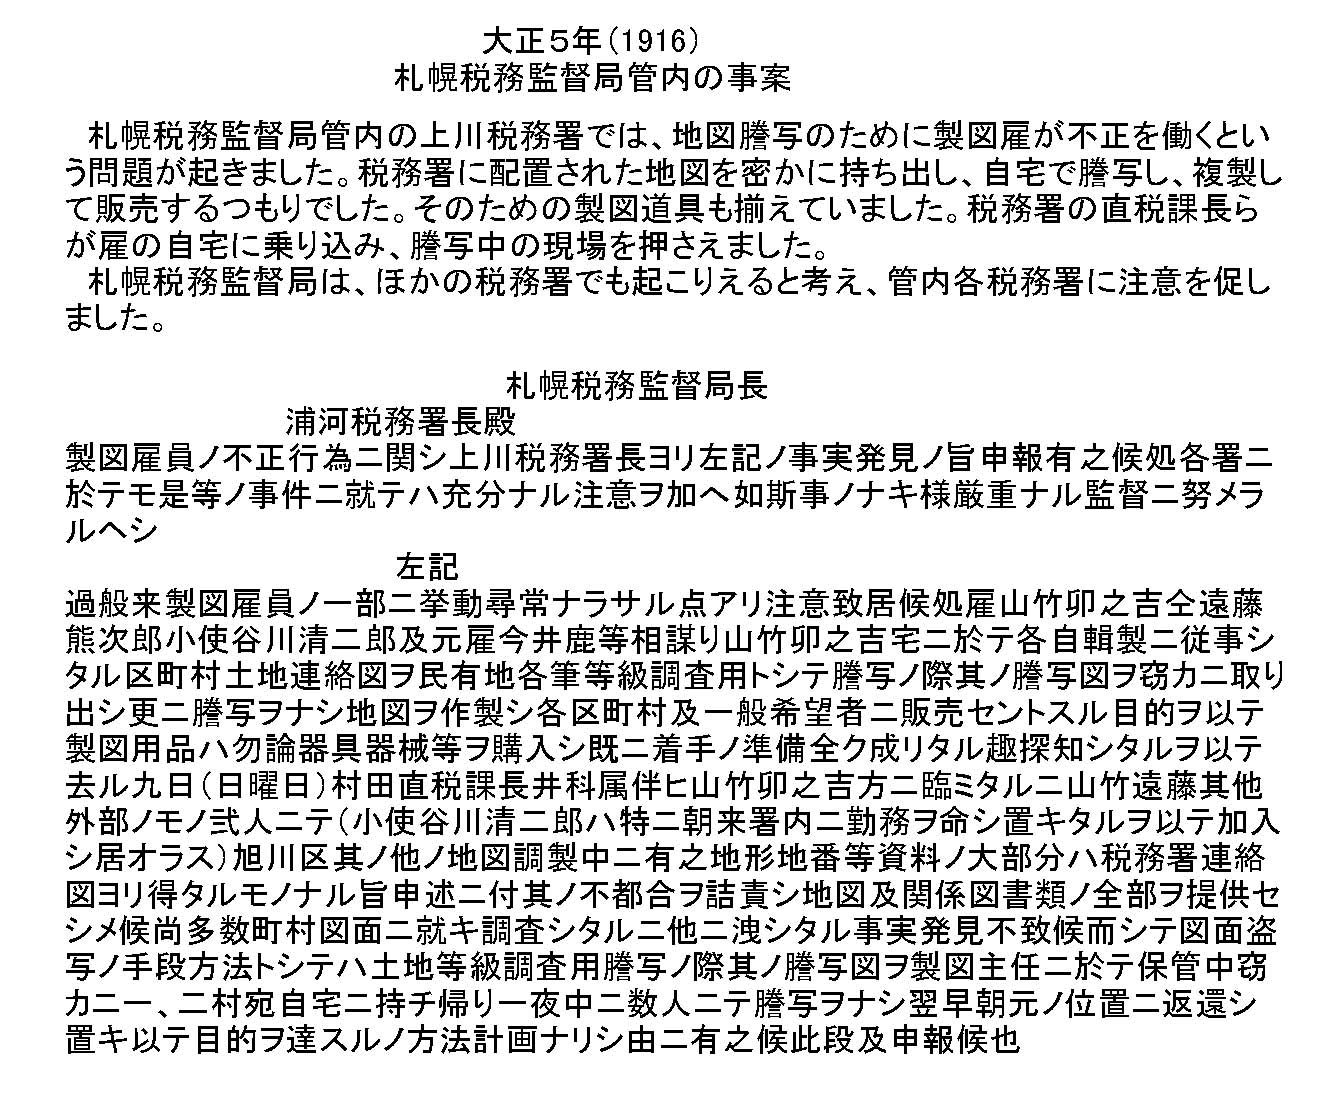 札幌税務監督局管内の事案